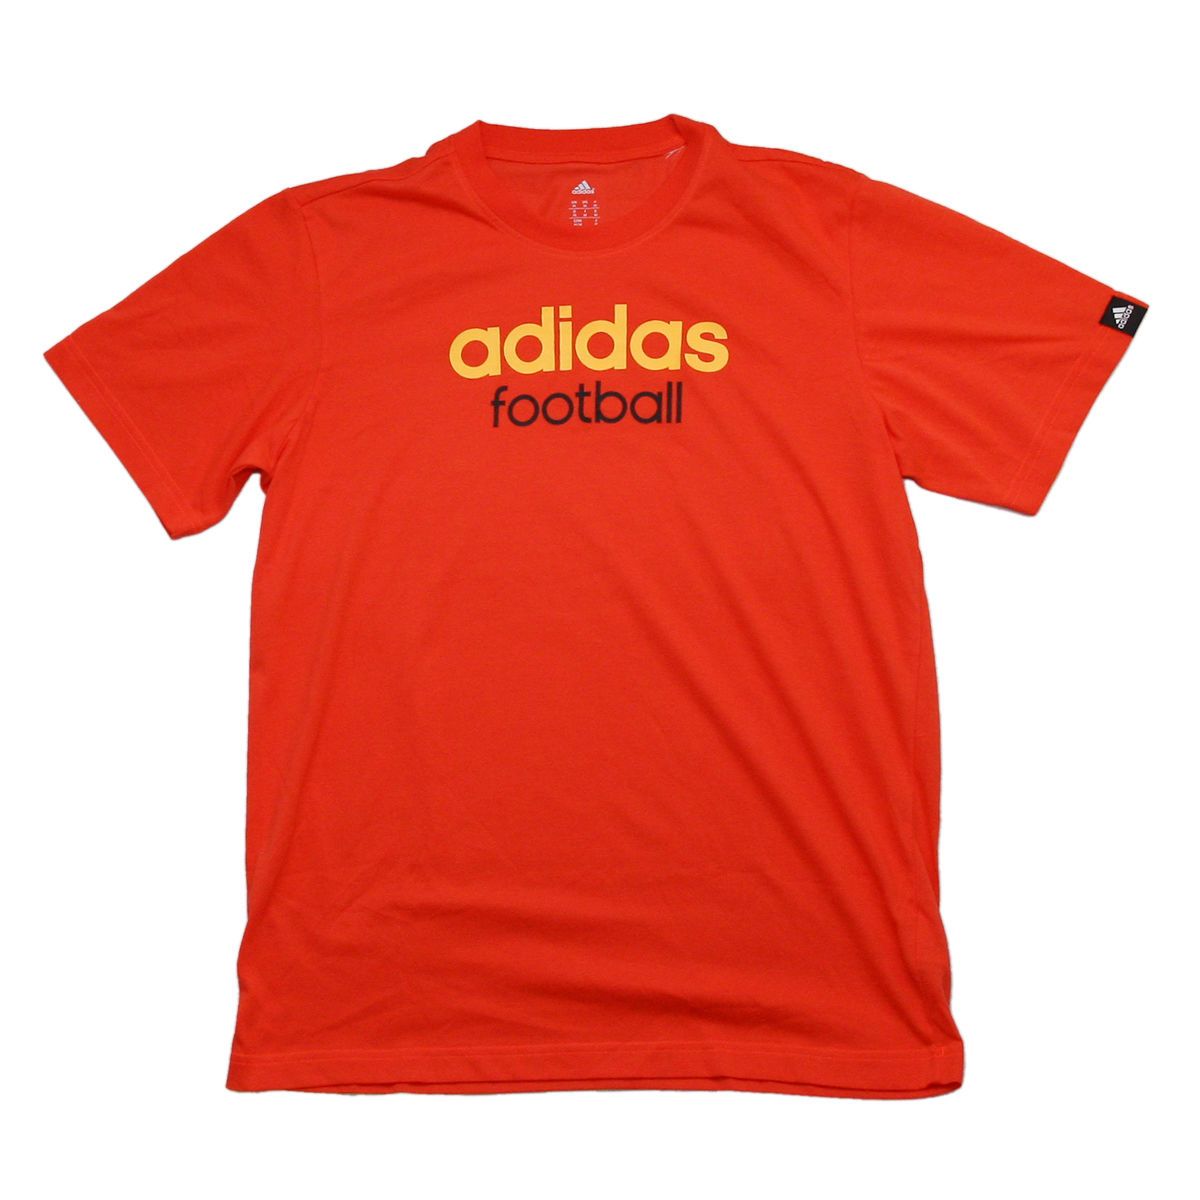  Adidas - Áo Thun Nam Thời Trang Thể Thao Football (Đỏ Cam) 